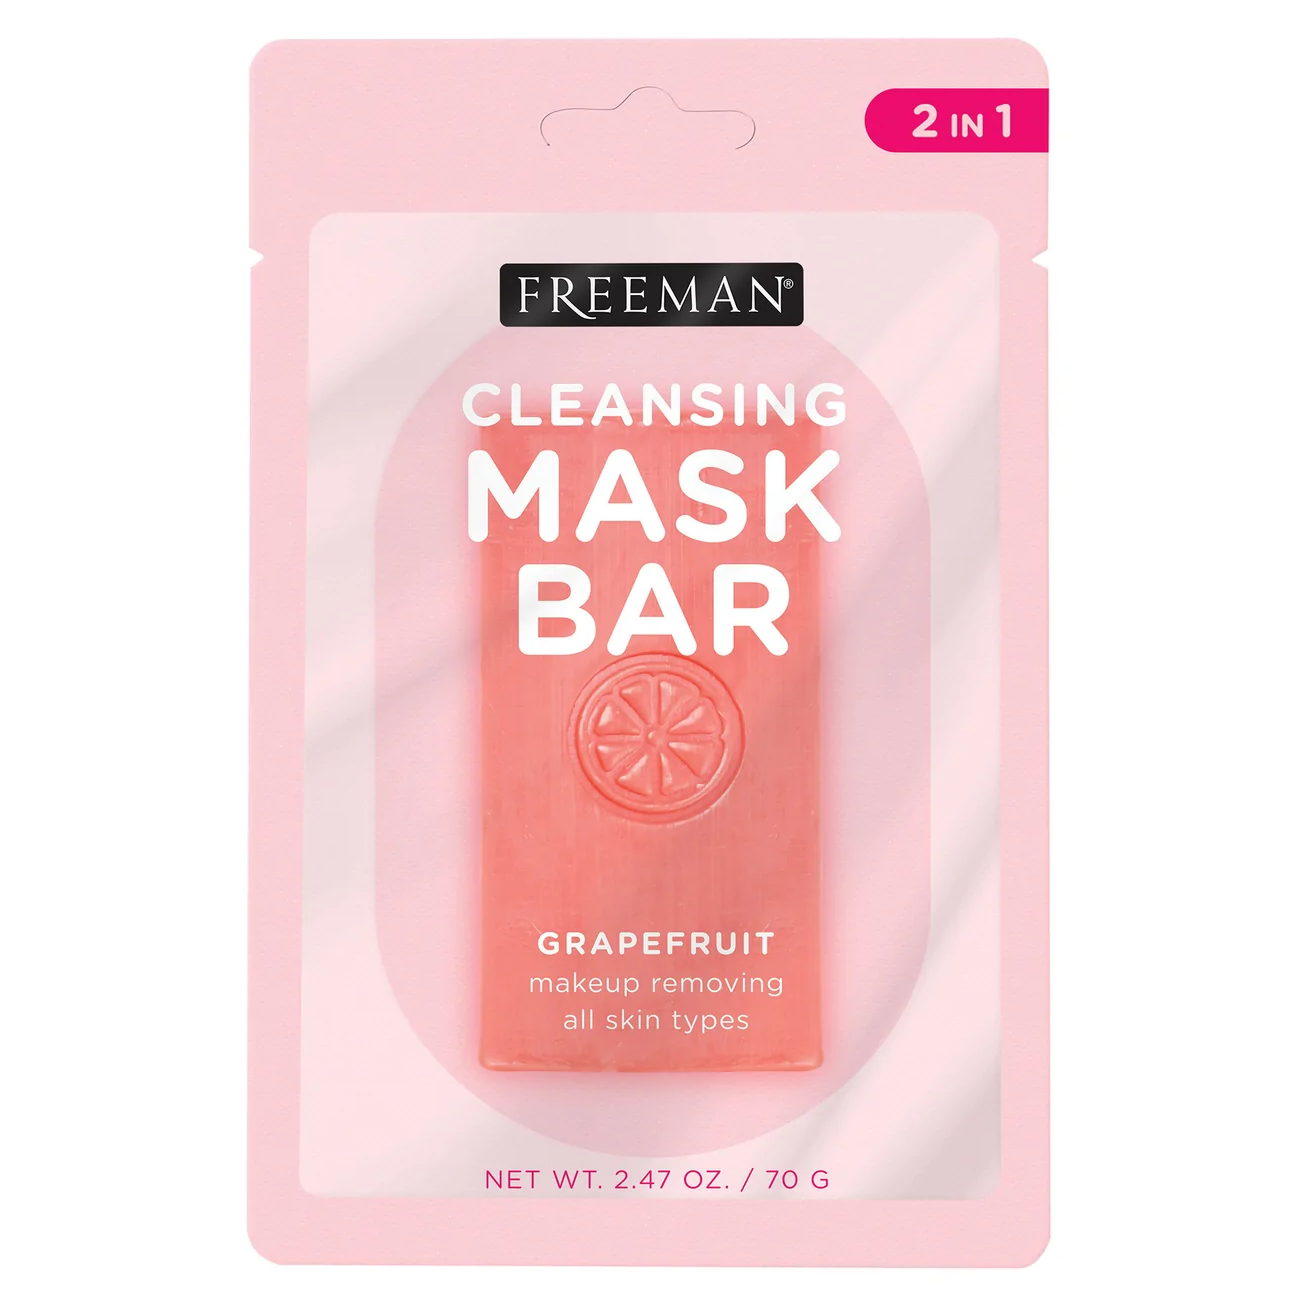 FREEMAN Cleansing Mask Bar Grapefruit Makeup Removing